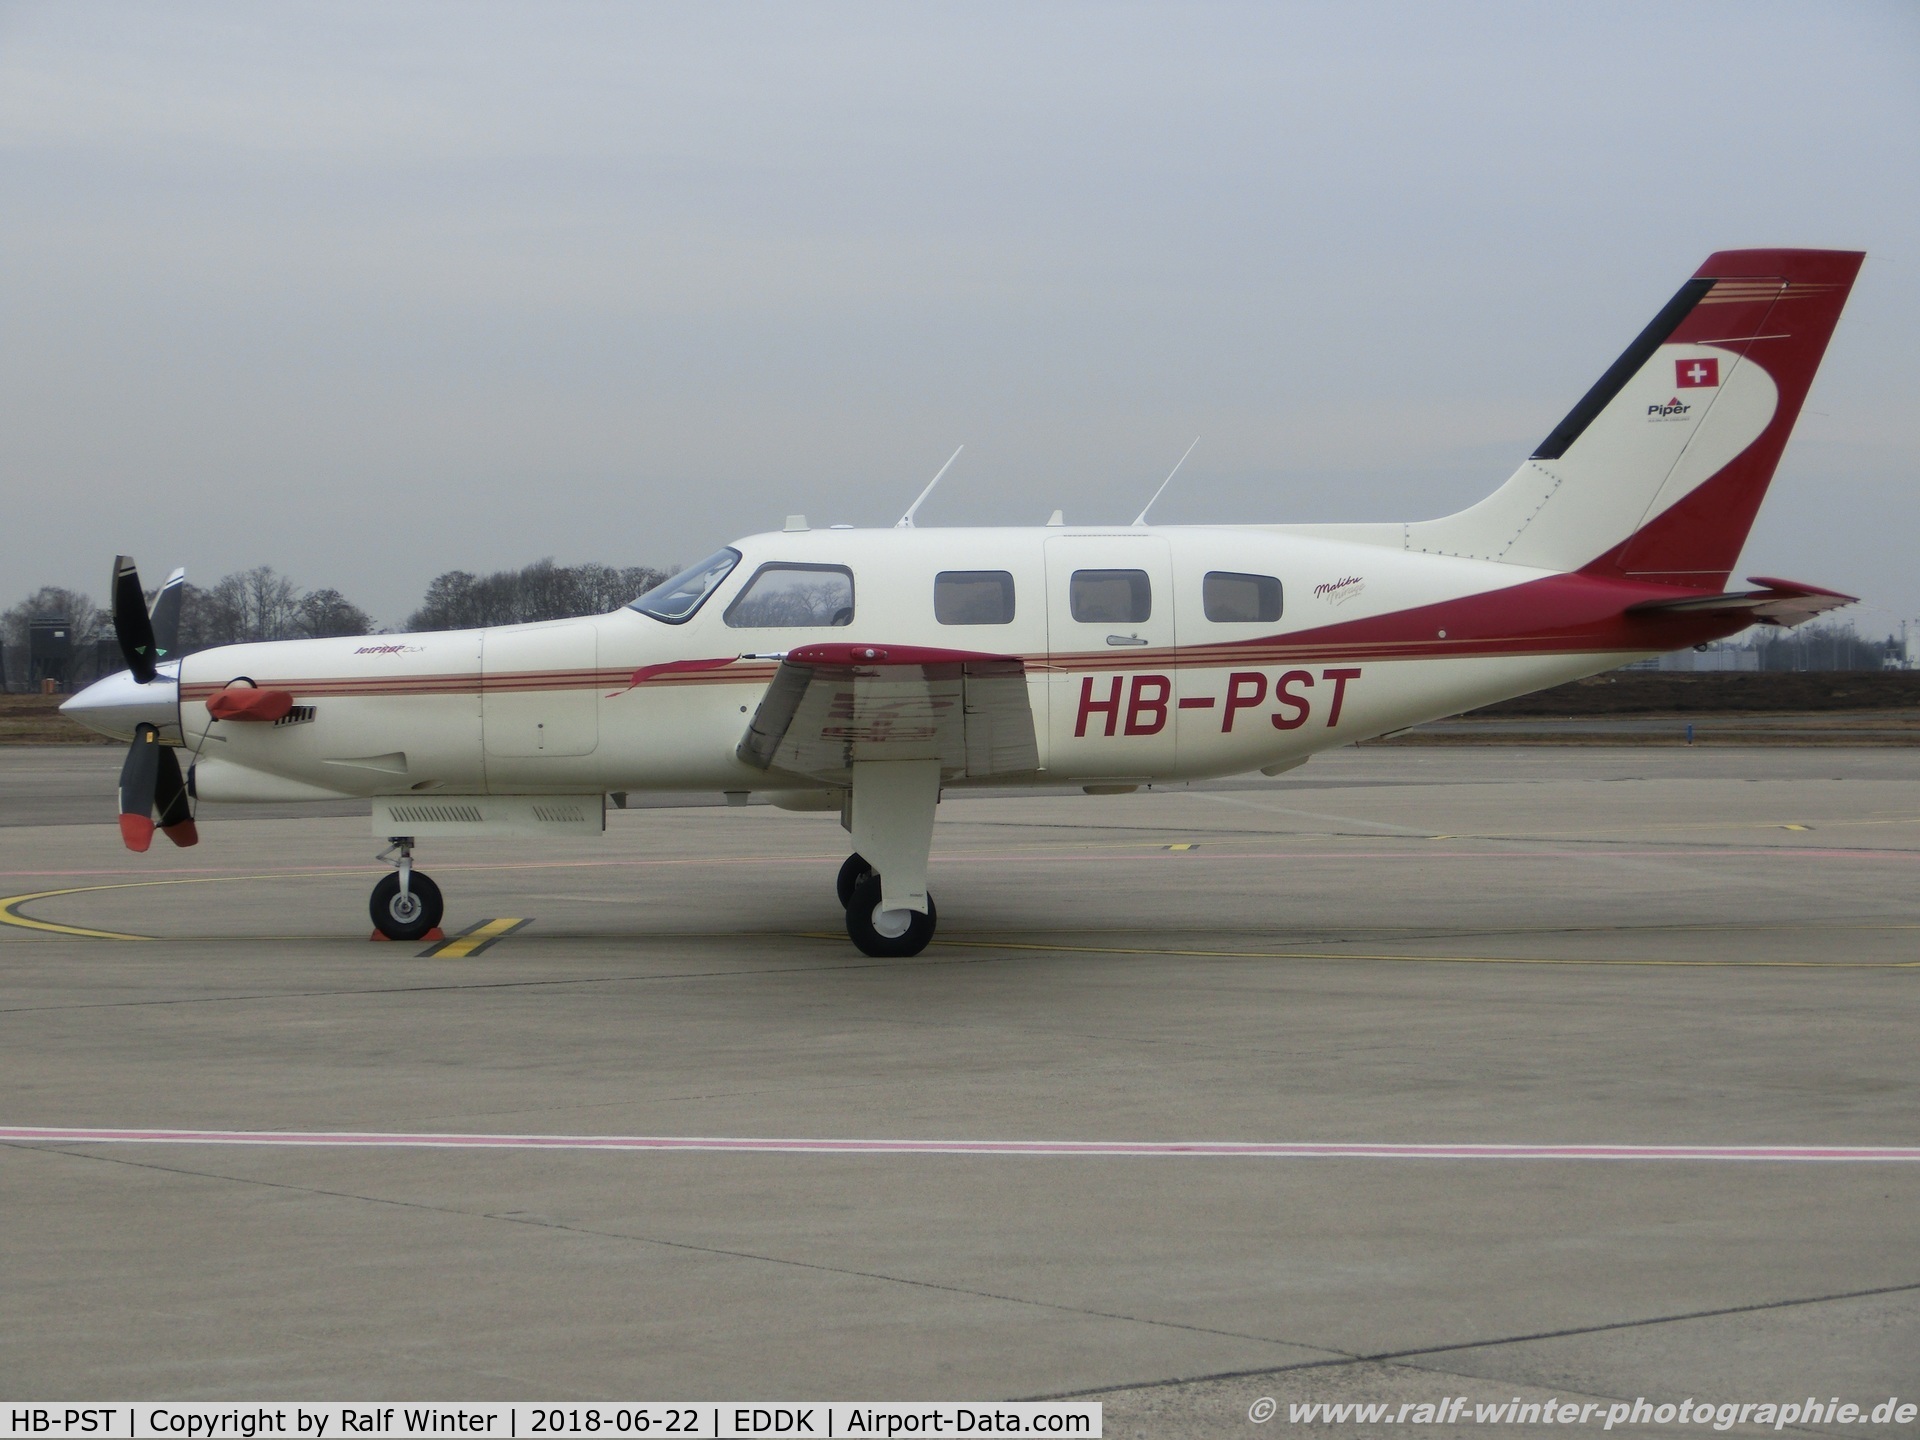 HB-PST, 1998 Piper PA-46-350P Malibu Mirage C/N 4636142, Piper PA-46-350P Jetprop DLX - Private - 4636142 - HB-PST - 22.06.2018 - CGN